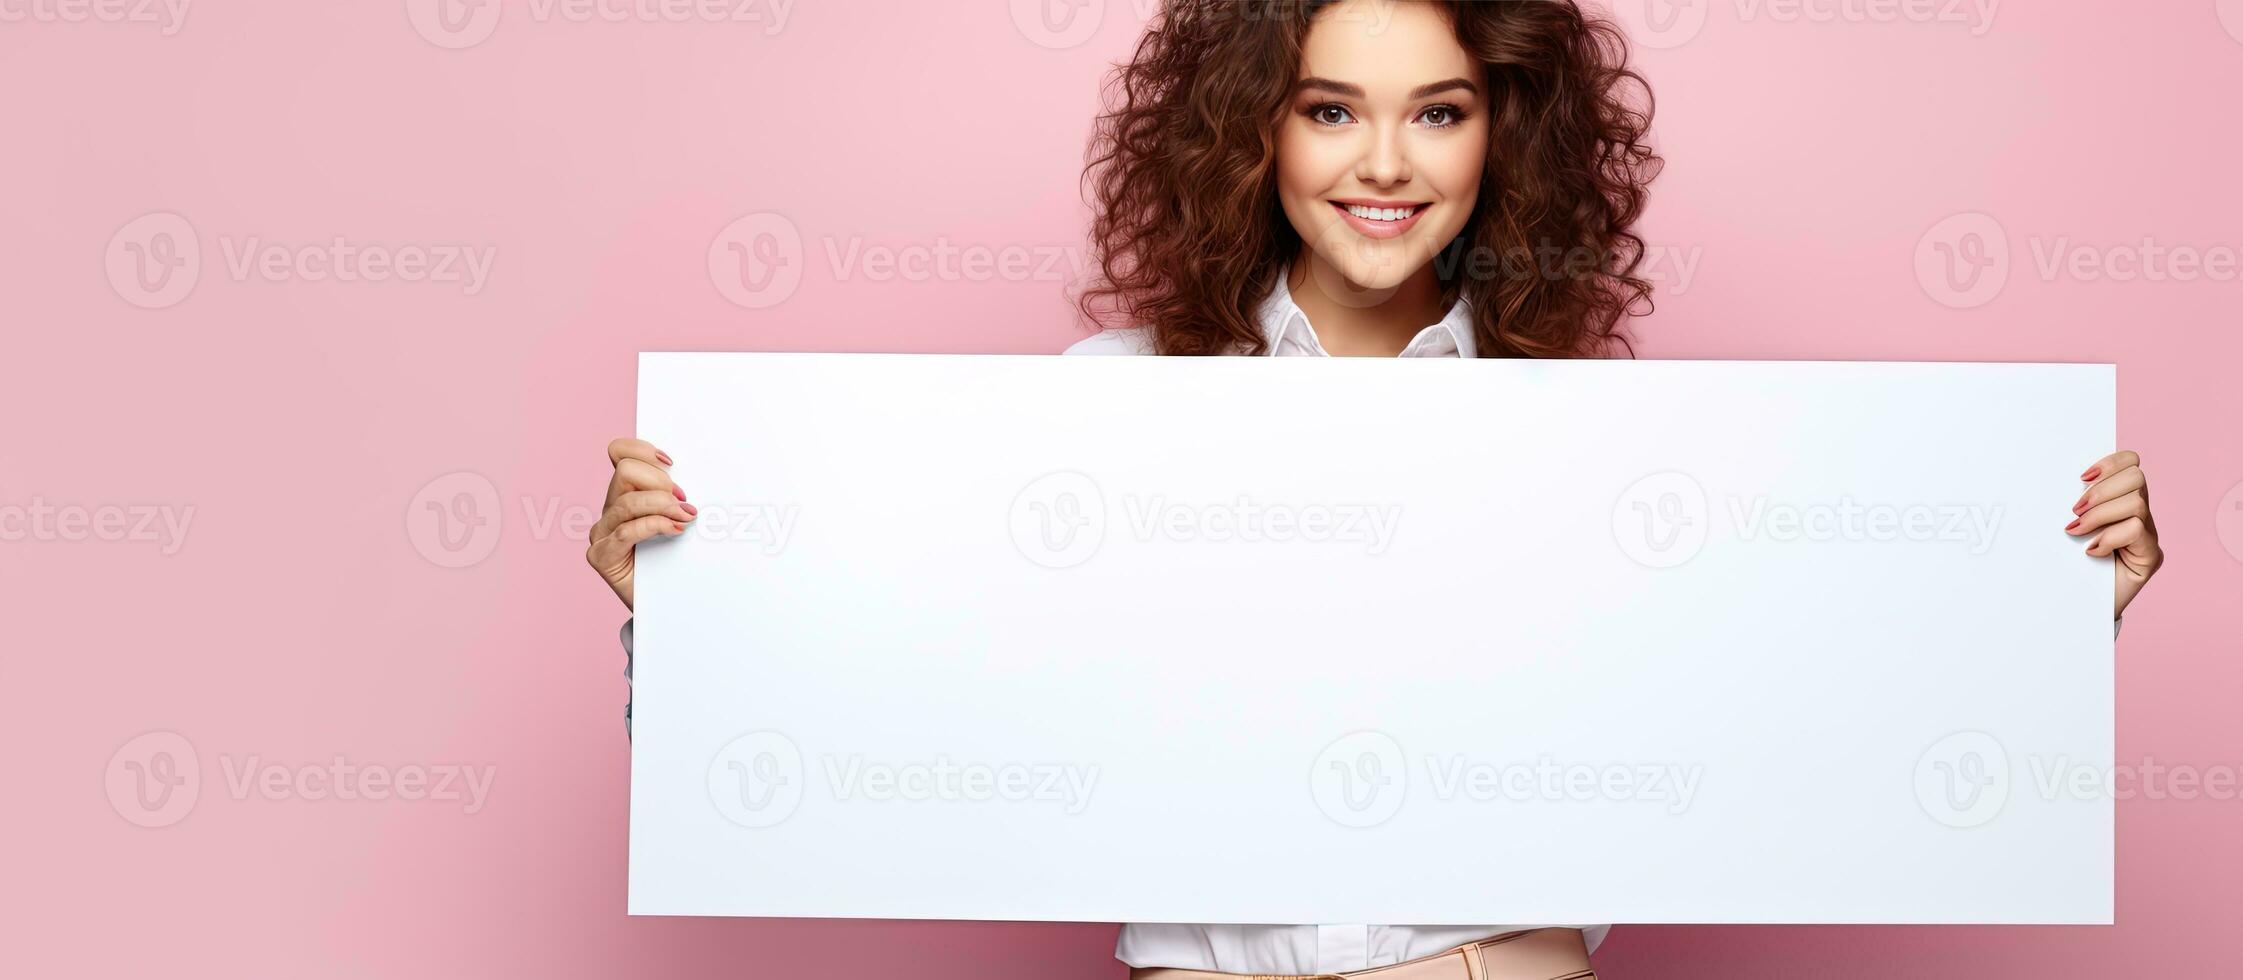 sonriente morena mujer soportes por grande vacío publicidad tablero rosado antecedentes espacio para texto foto